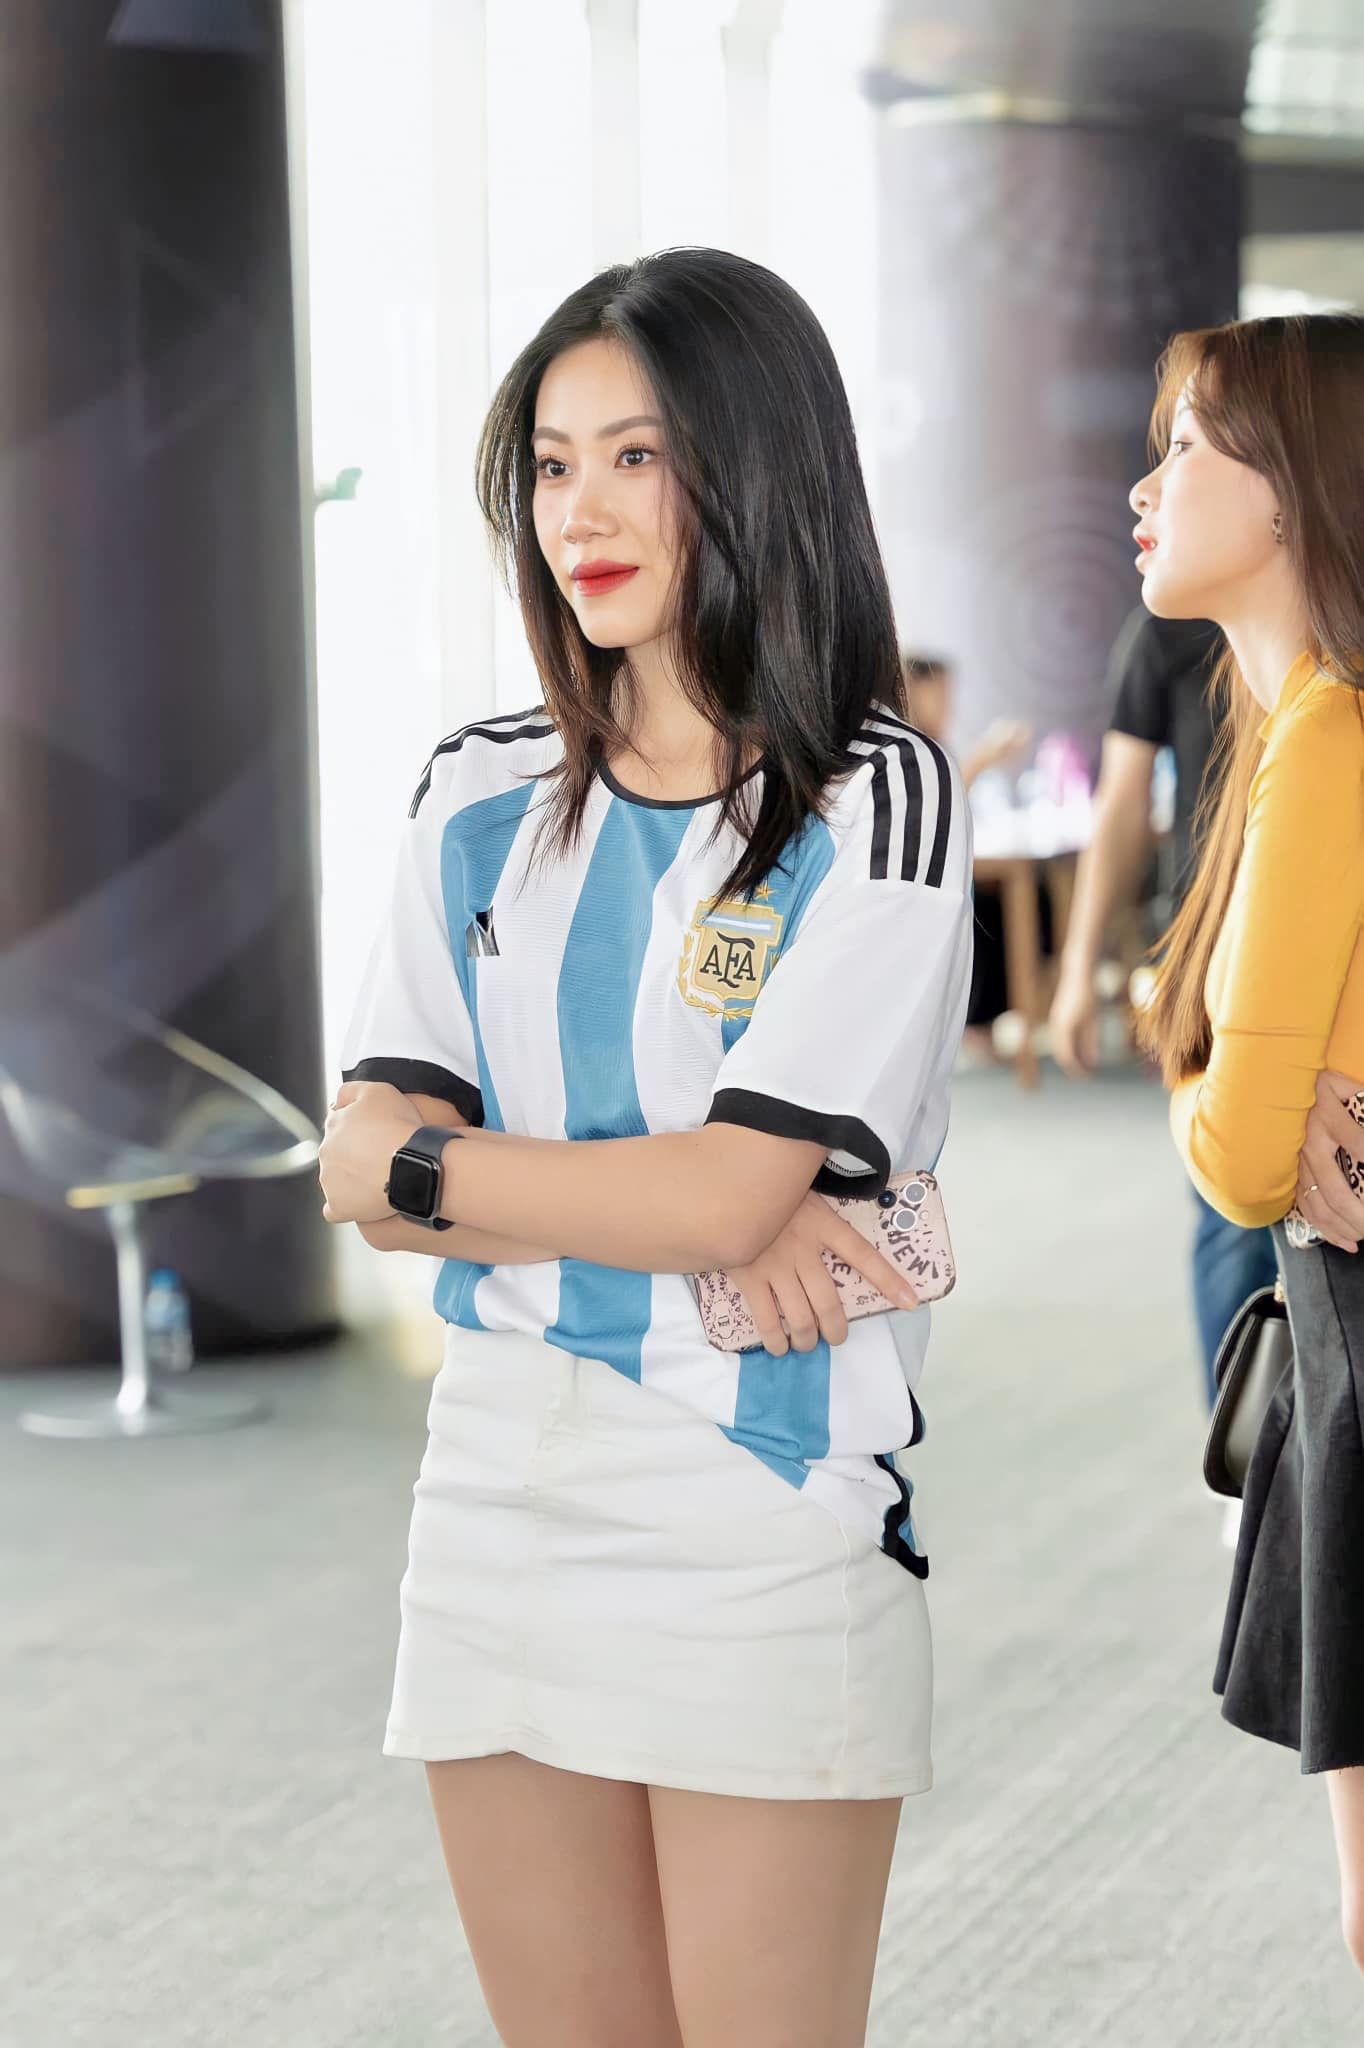 Đại diện Argentina đang rất hot và nổi tiếng trong cộng đồng mạng. Xem những hình ảnh của hotgirl này để cảm nhận sự quyến rũ và đẳng cấp của người phụ nữ Nam Mỹ!